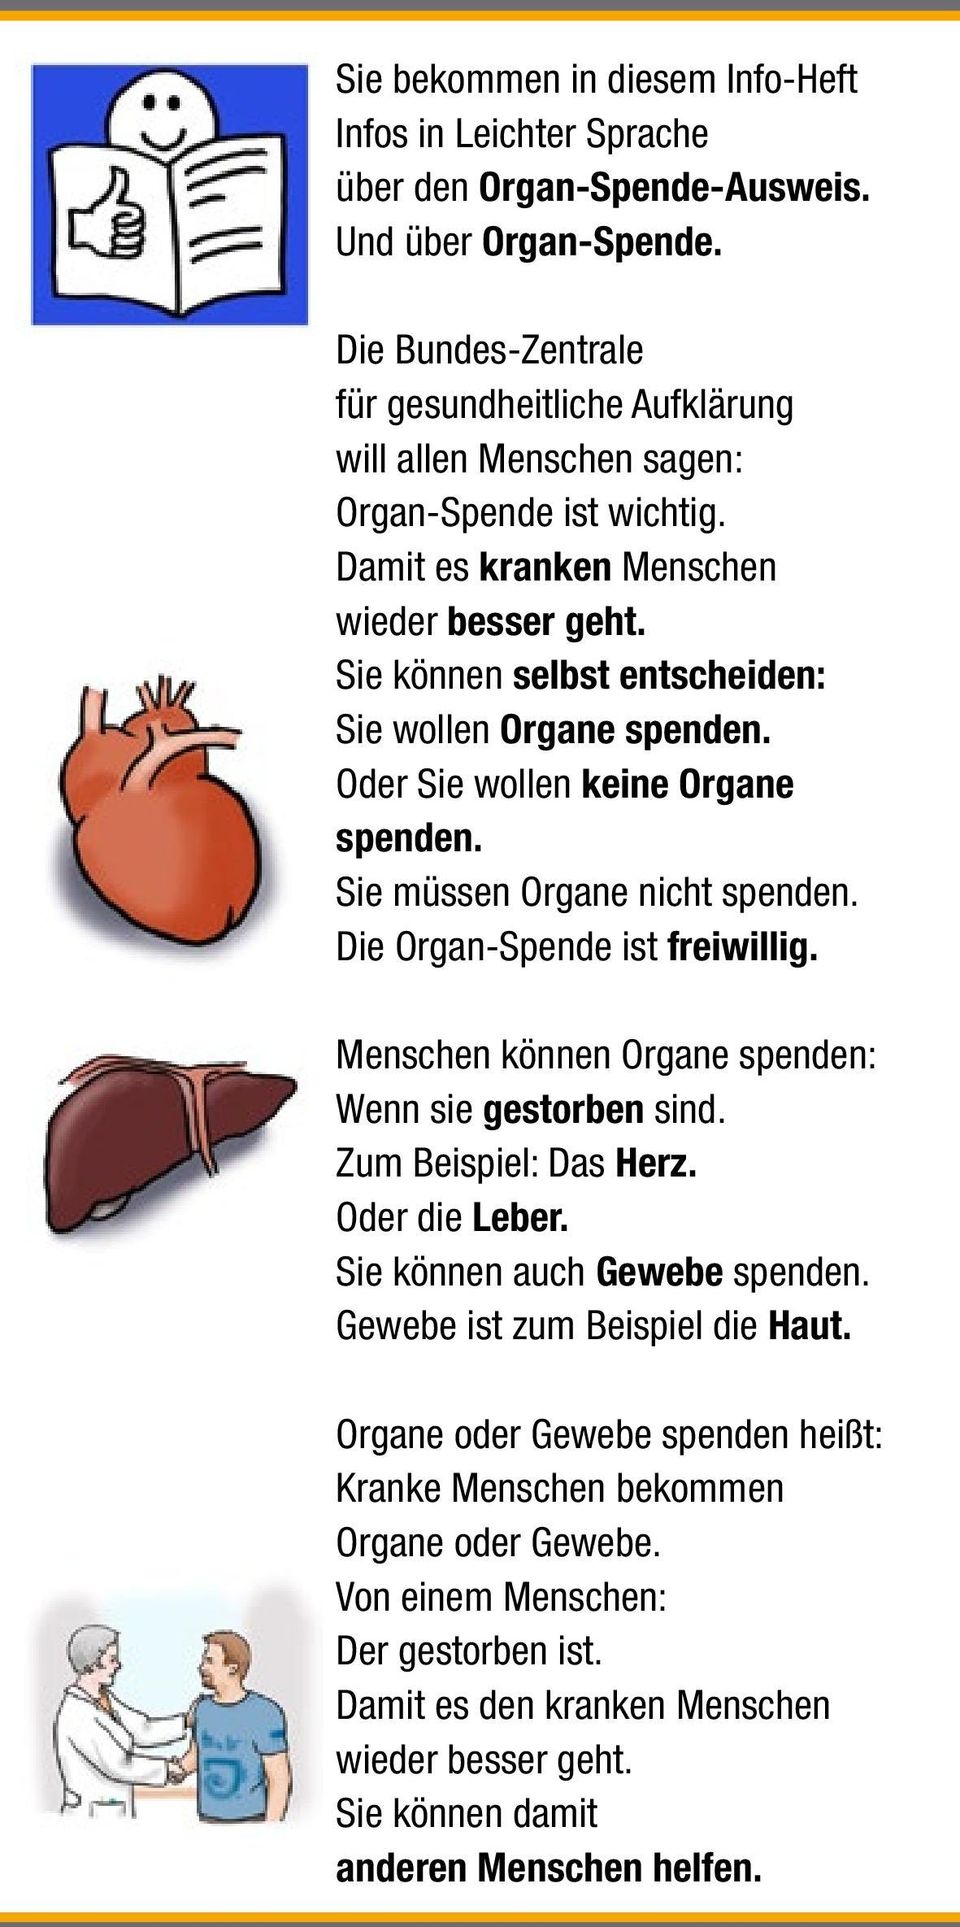 Sie können selbst entscheiden: Sie wollen Organe spenden. Oder Sie wollen keine Organe spenden. Sie müssen Organe nicht spenden. Die Organ-Spende ist freiwillig.